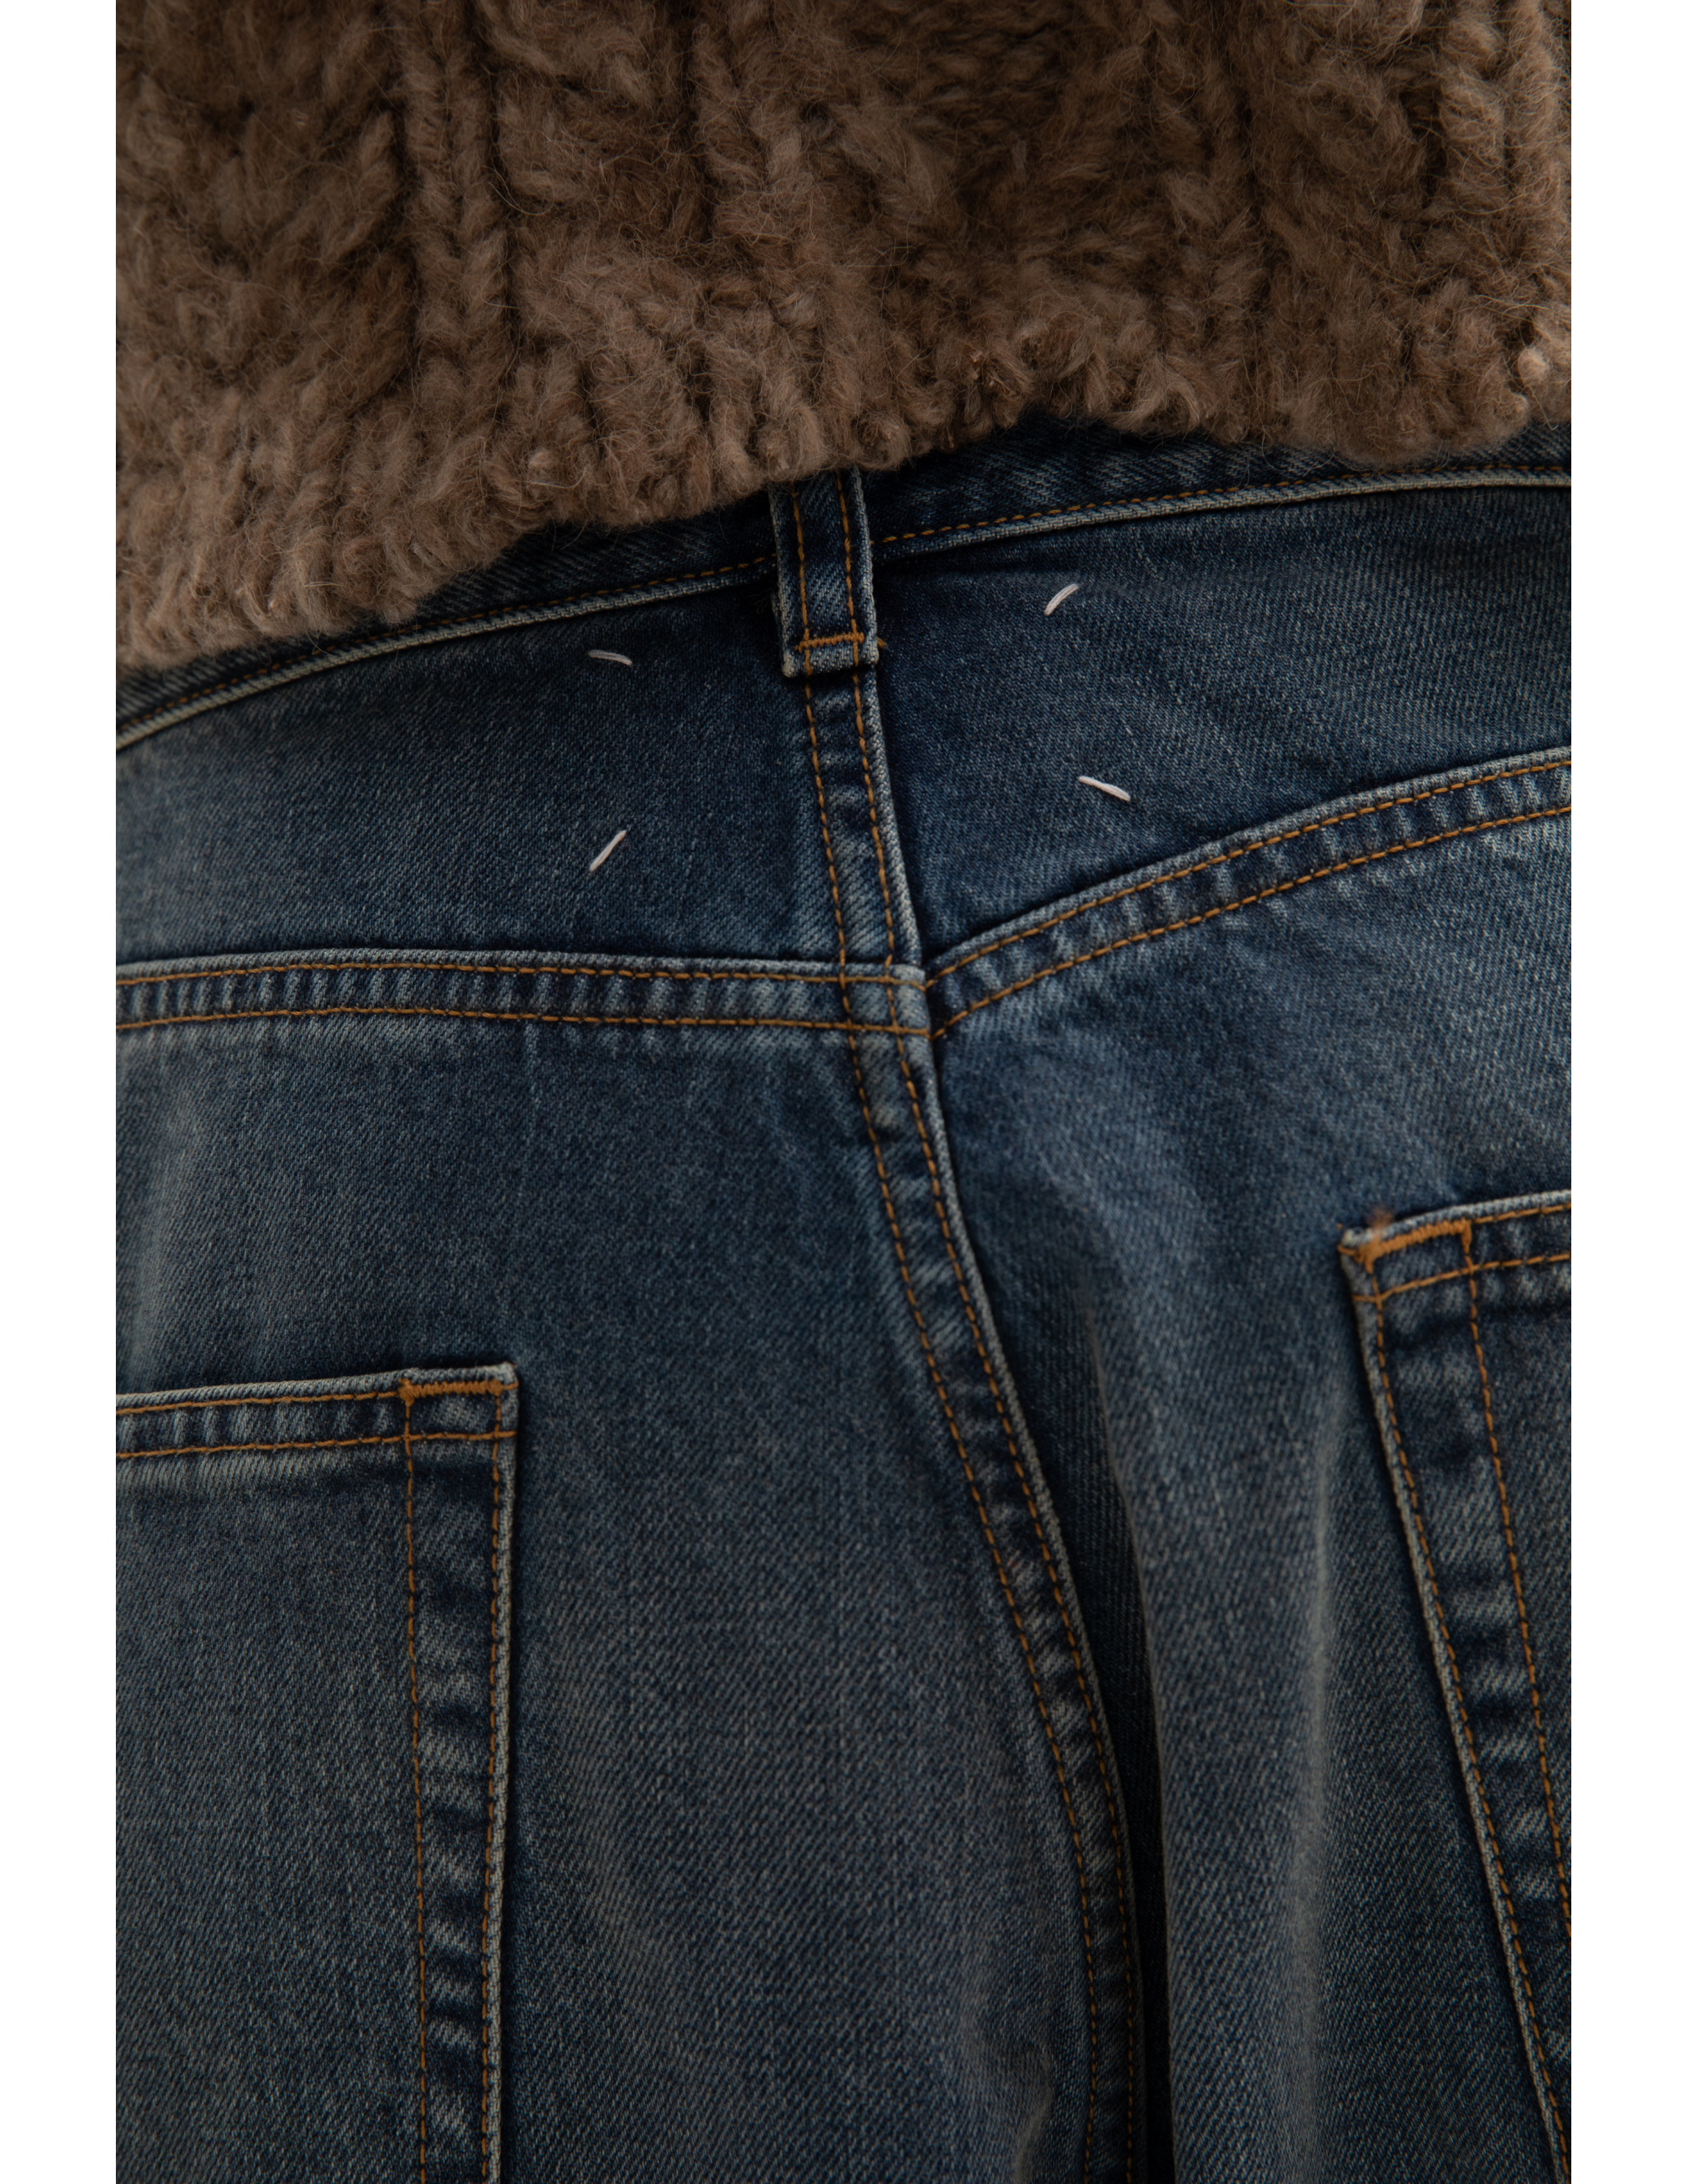 Прямые джинсы с низкой посадкой Maison Margiela S51LA0148/S30561/972, размер 44;40;38 S51LA0148/S30561/972 - фото 4